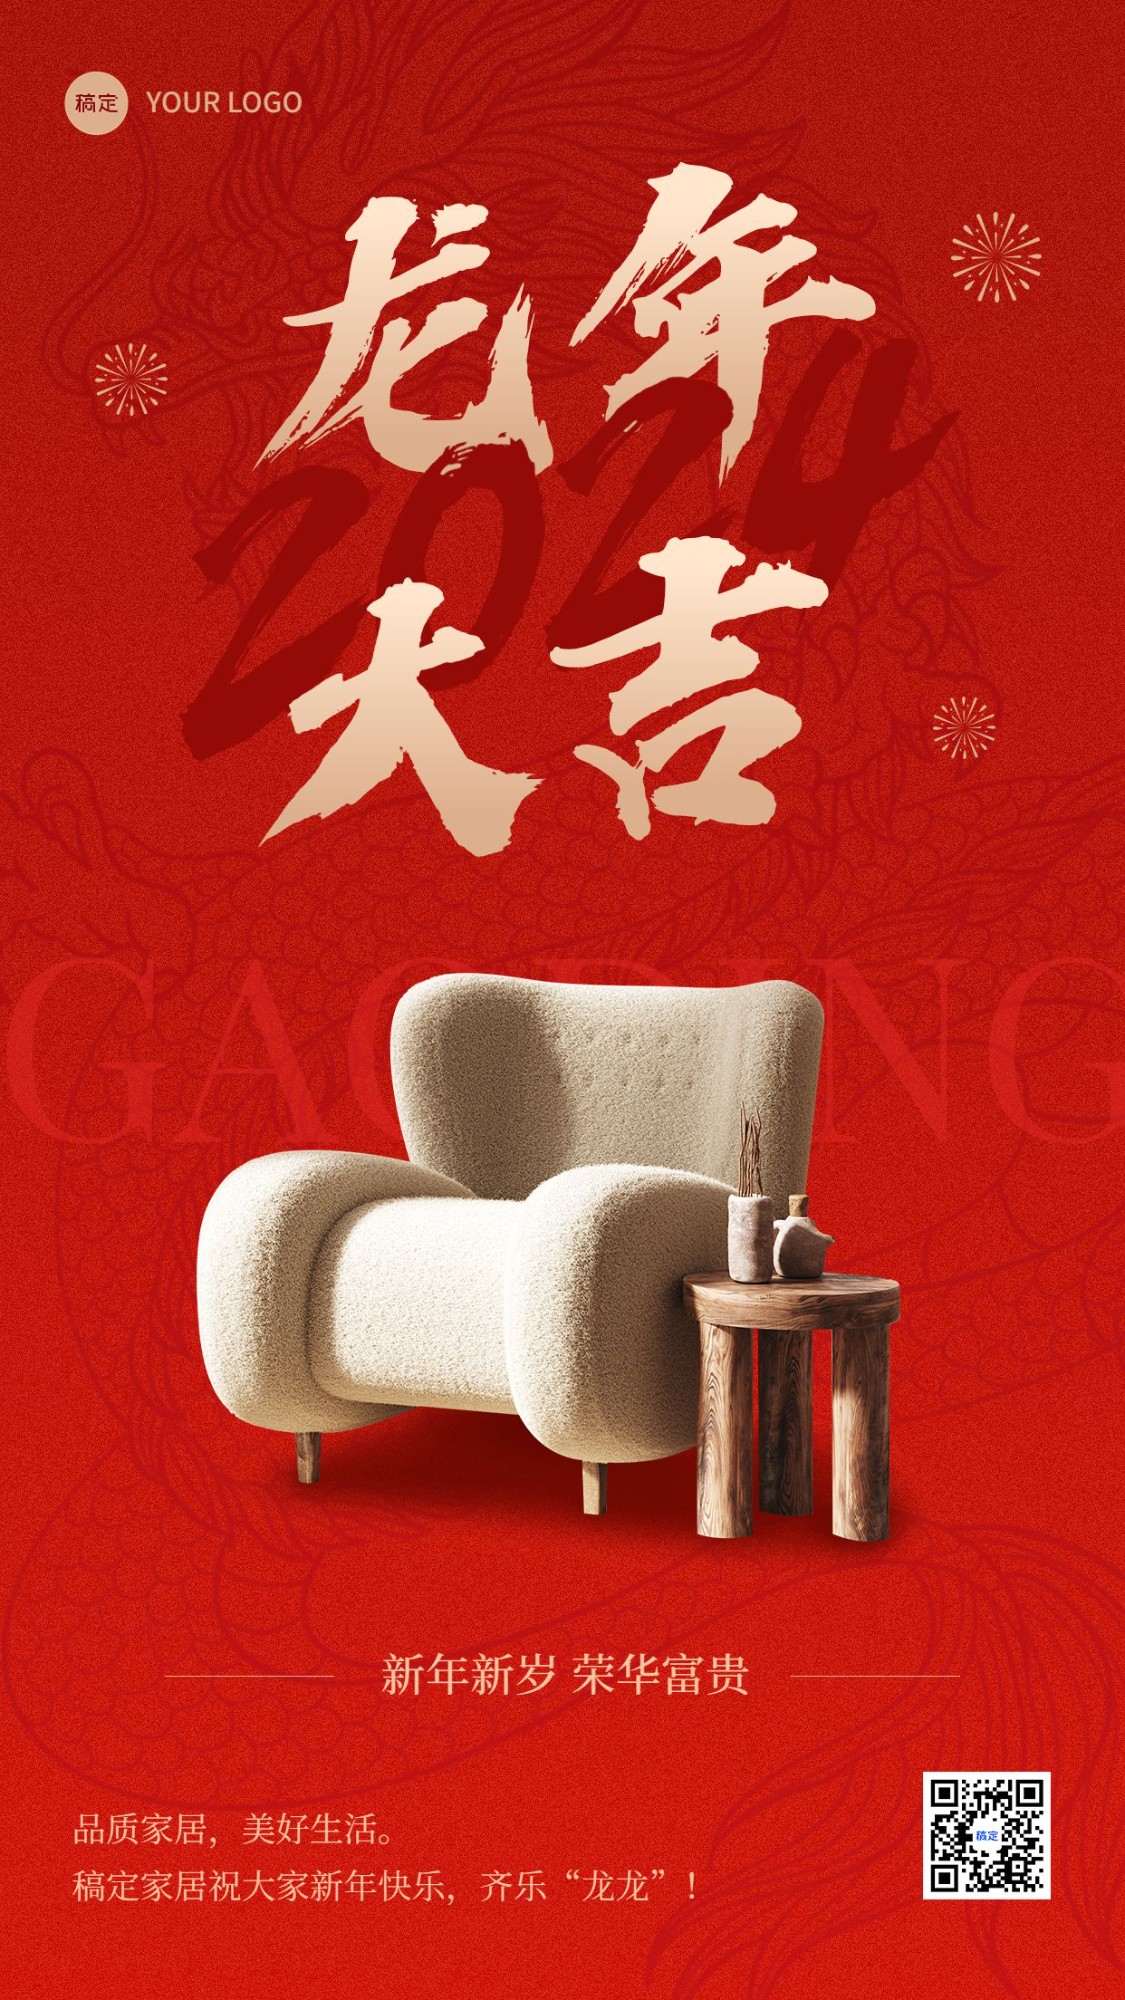 春节家居百货节日祝福产品展示喜庆感竖版海报预览效果